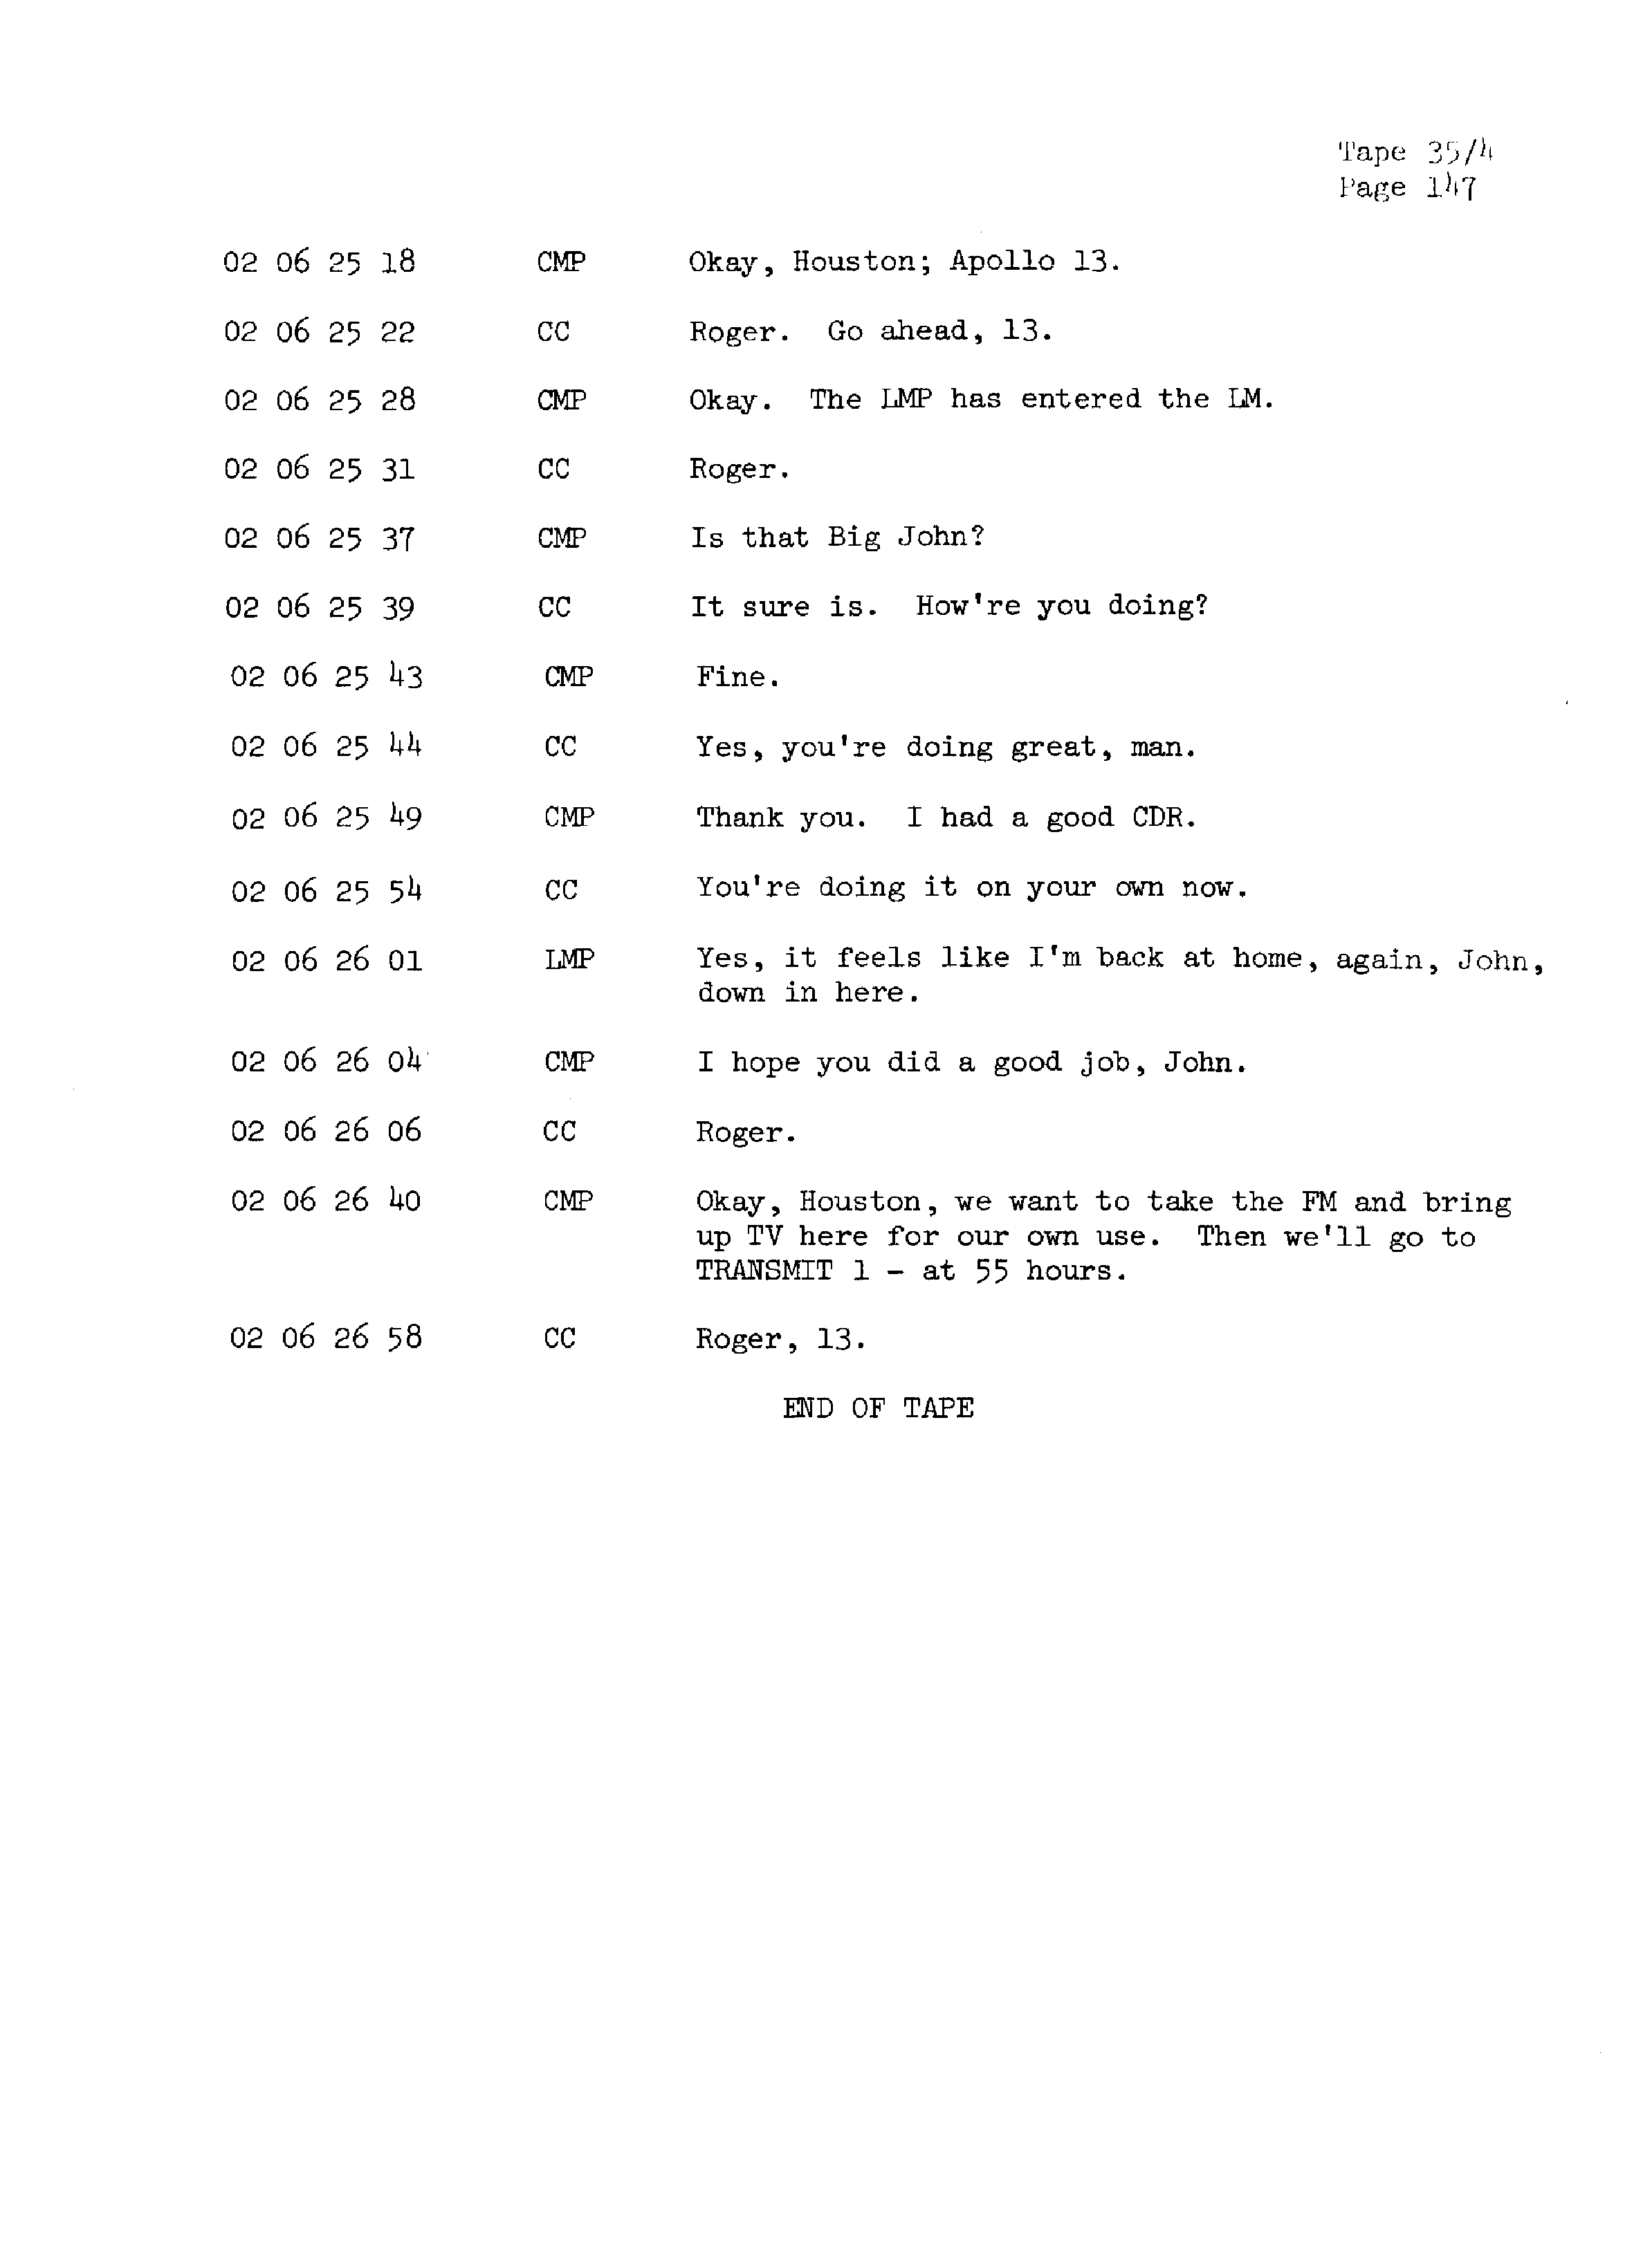 Page 154 of Apollo 13’s original transcript